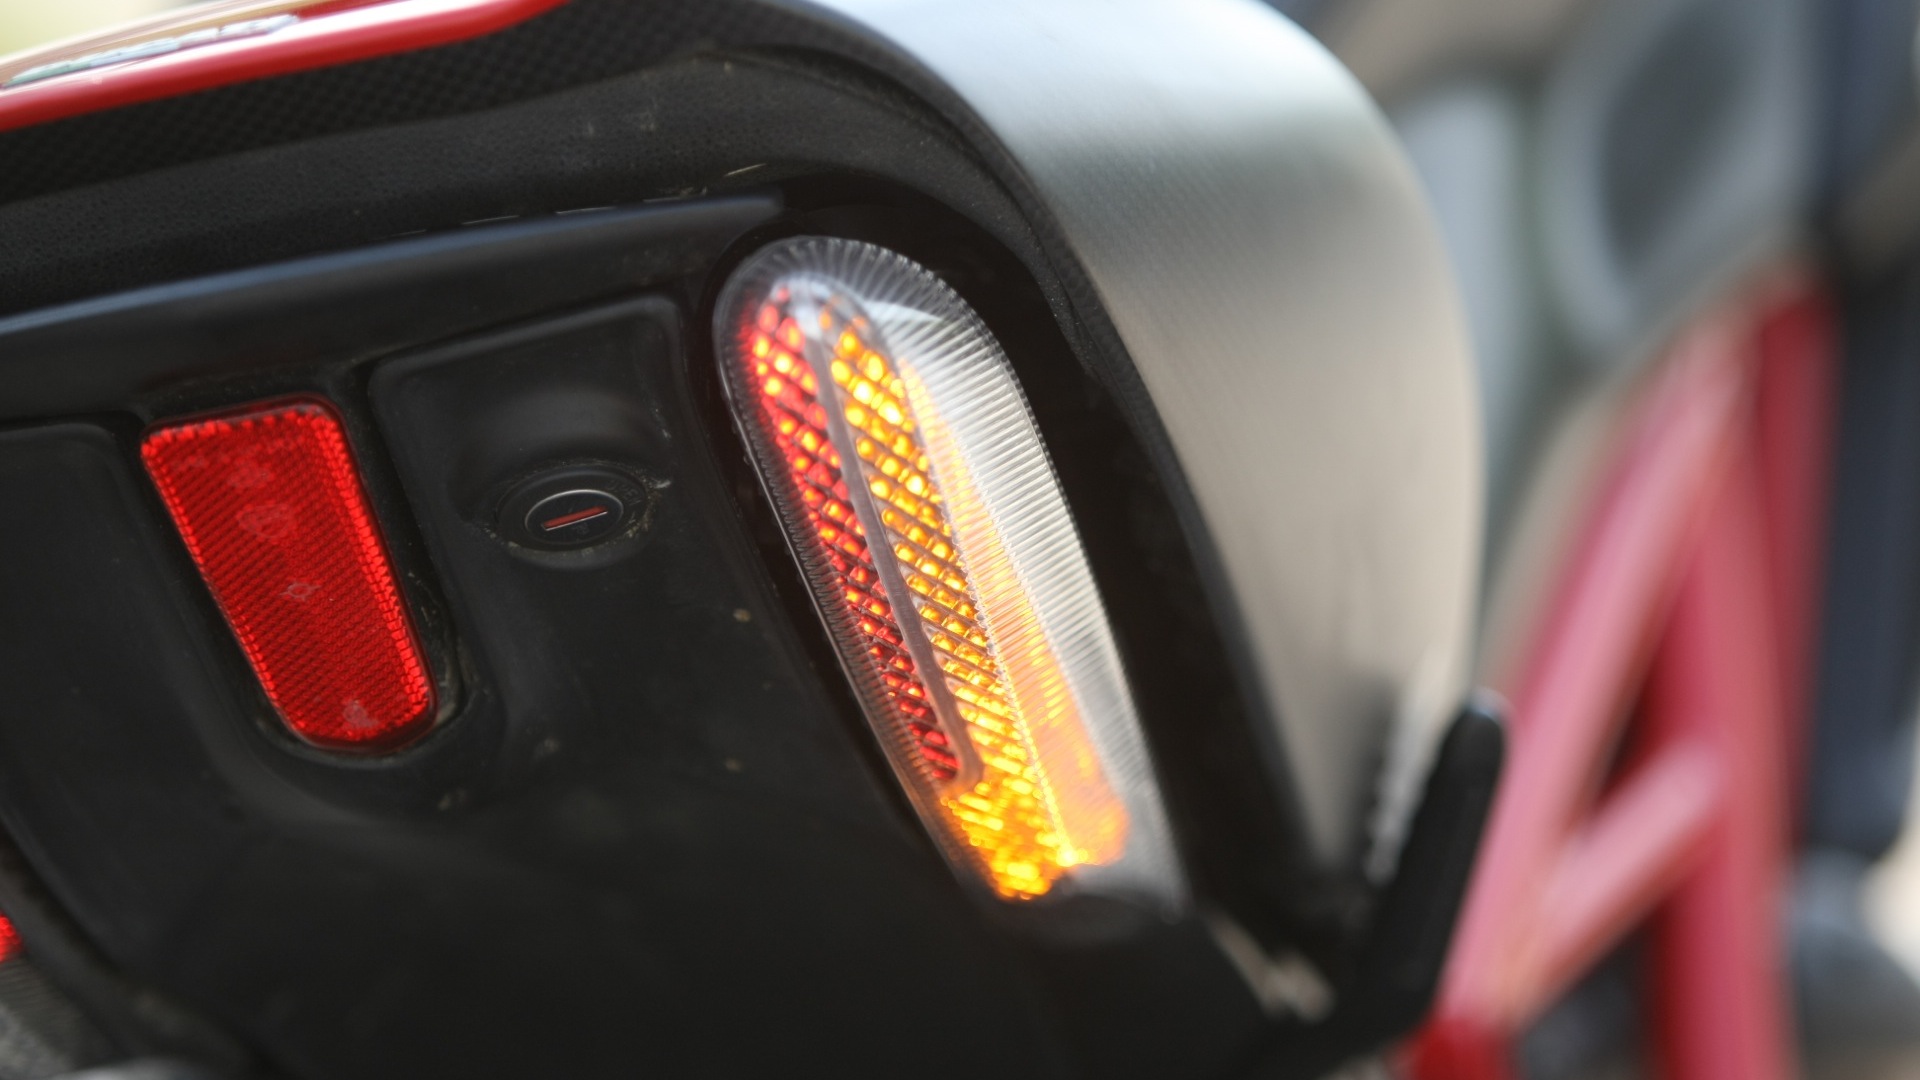 Ducati Diavel 2013 Carbon Exterior